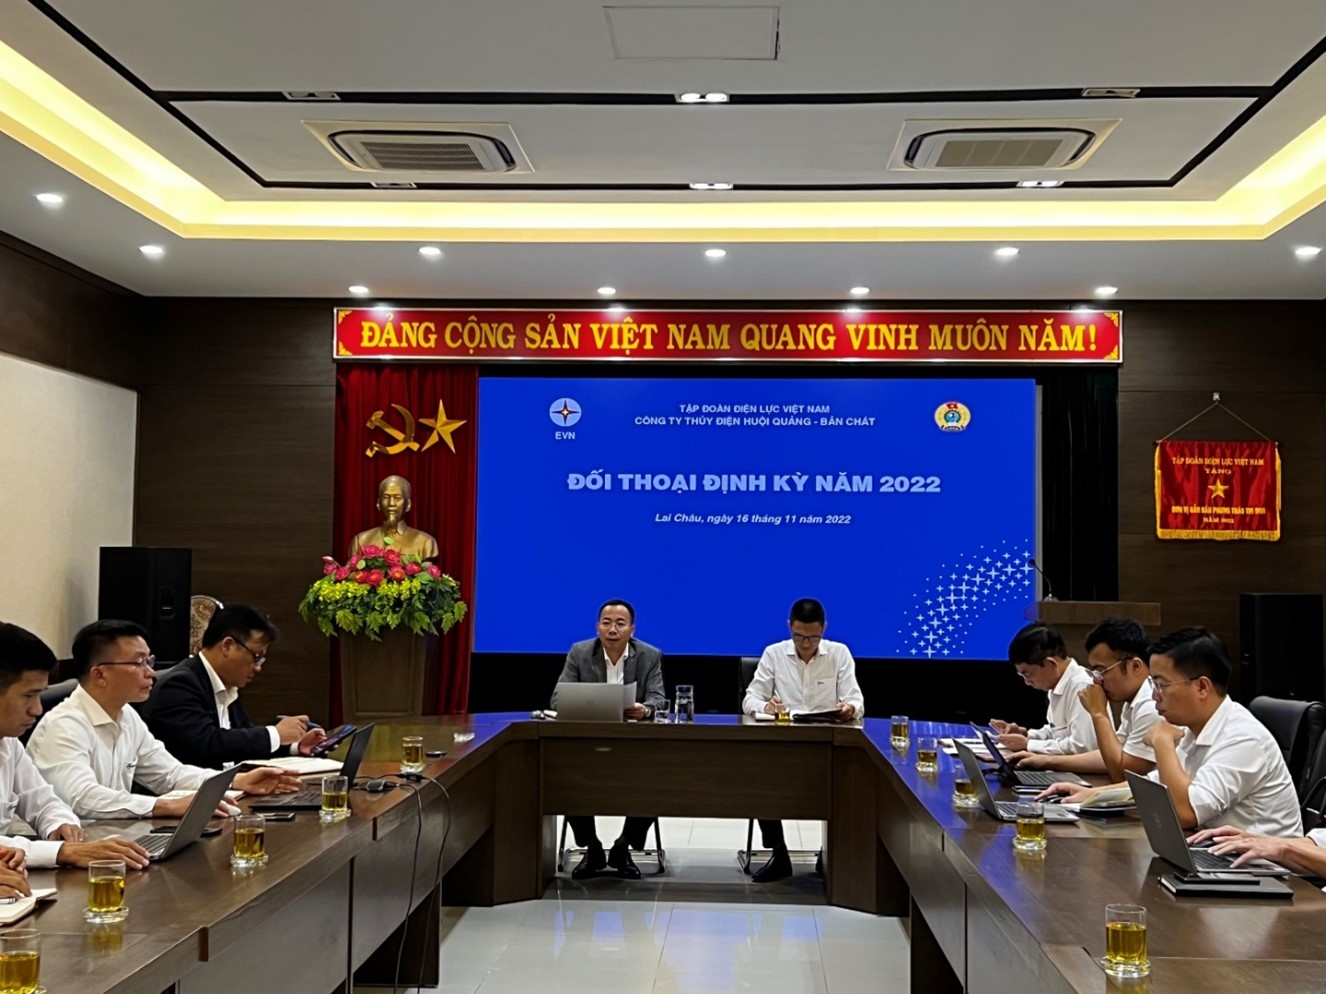 Công ty Thuỷ điện Huội Quảng - Bản Chát tổ chức đối thoại định kỳ năm 2022